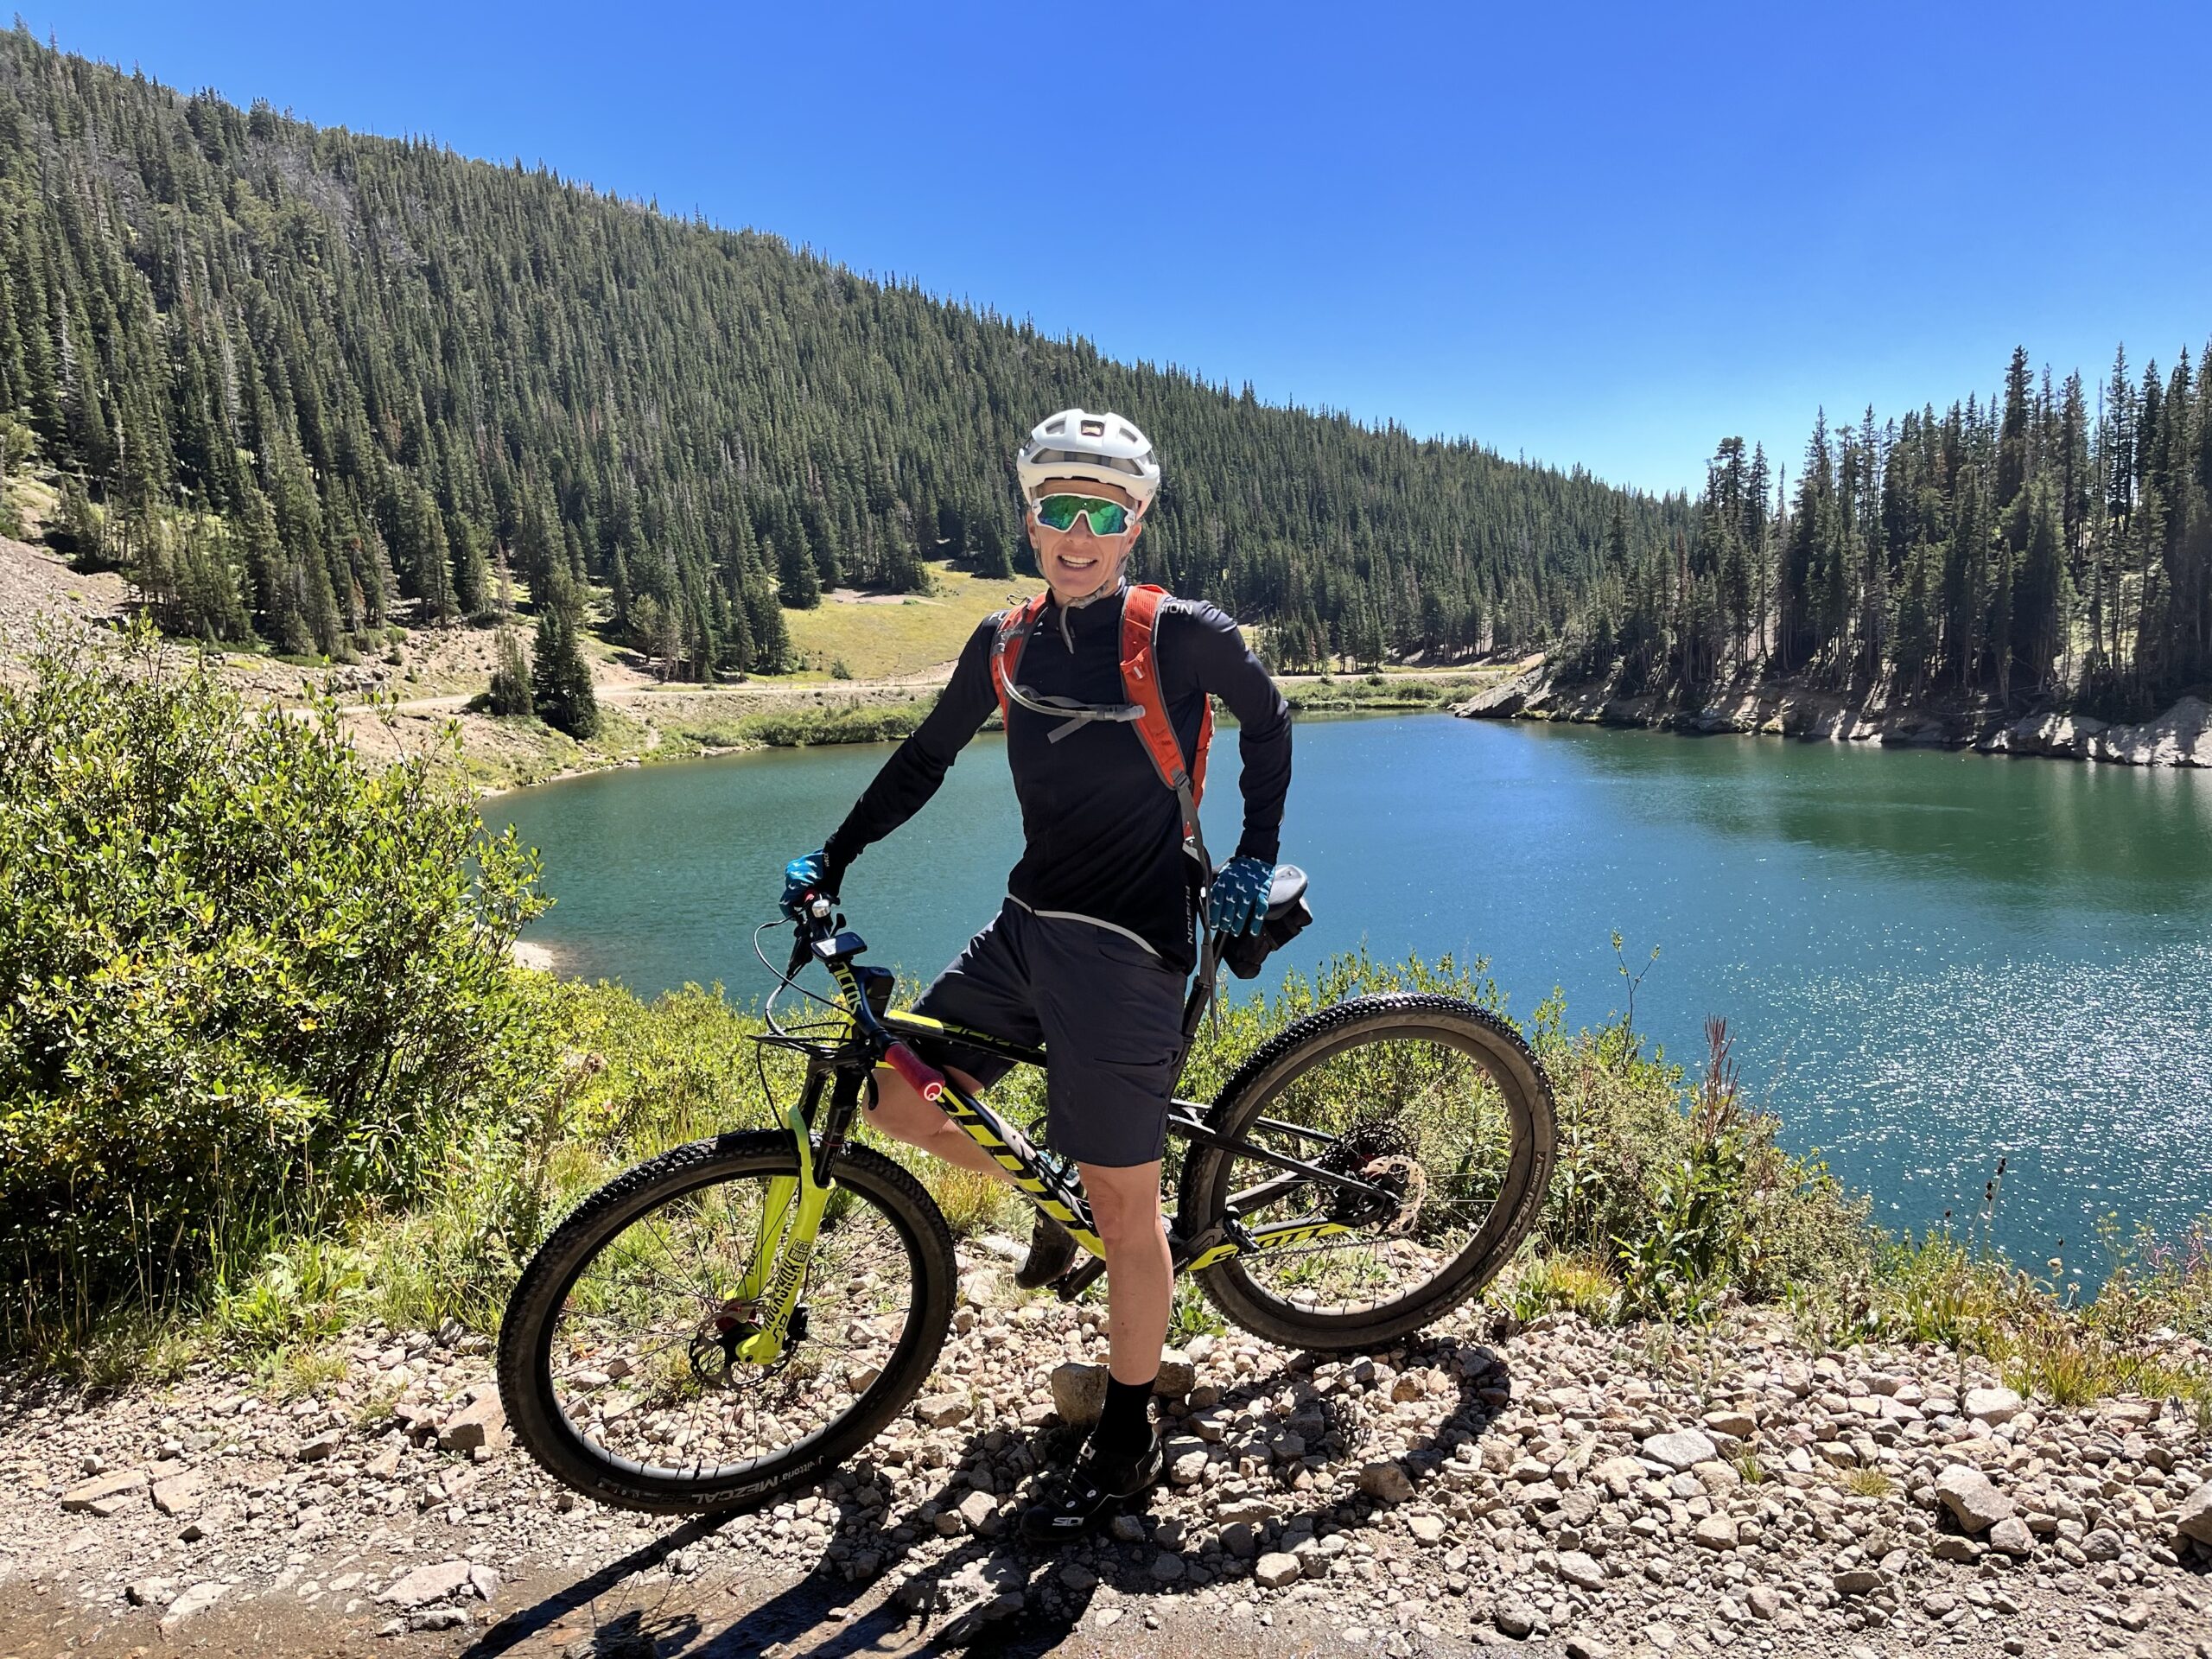 Coach Sophie Evans on mountain bike near a lake